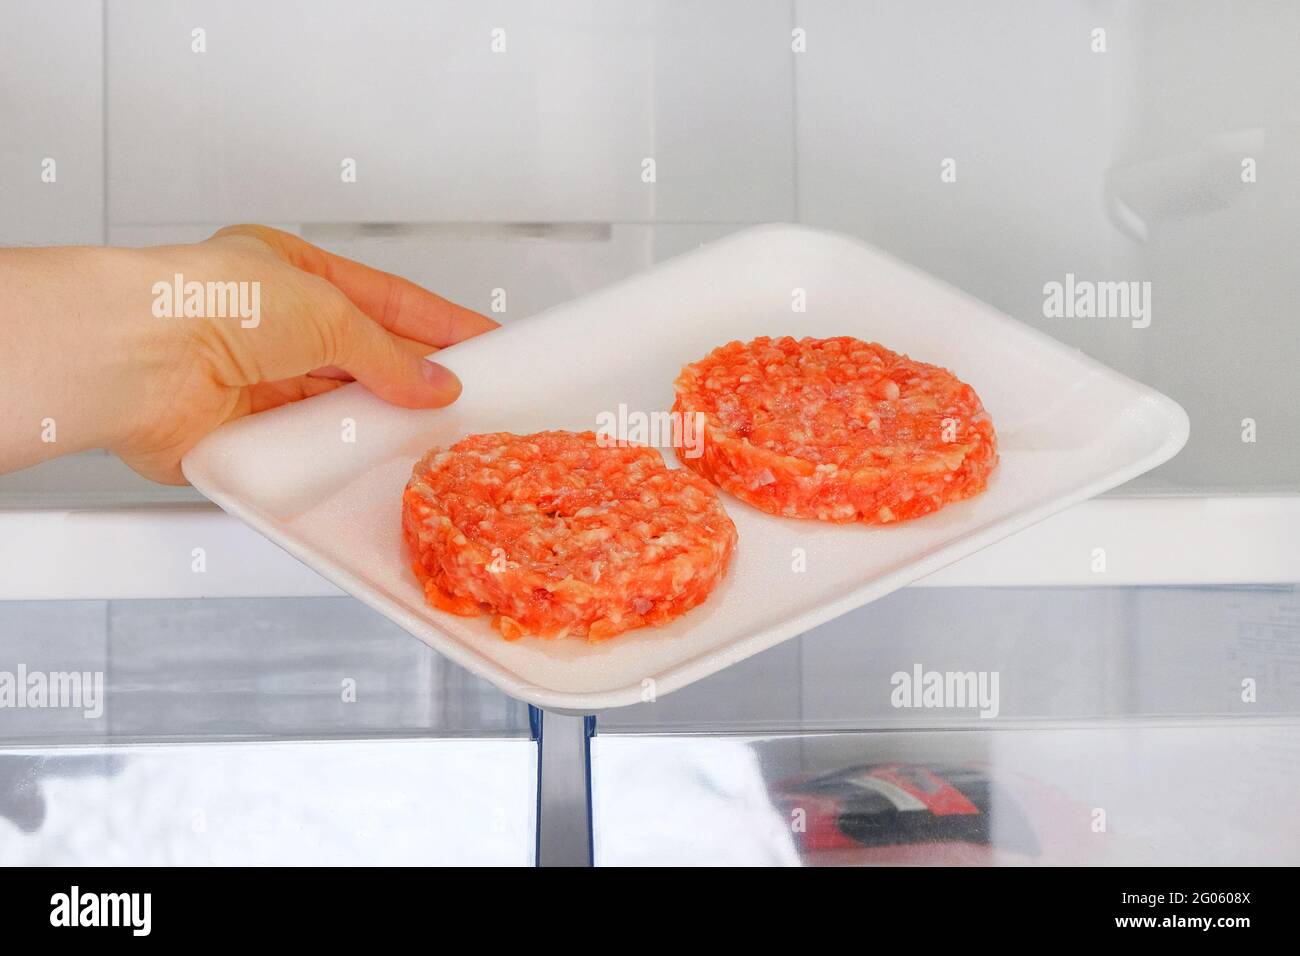 Il Burger di pollo crudo in contenitore è su ripiano in frigorifero aperto. La mano femminile tira fuori dal frigorifero un ingrediente per cucinare piatti di carne. Foto Stock